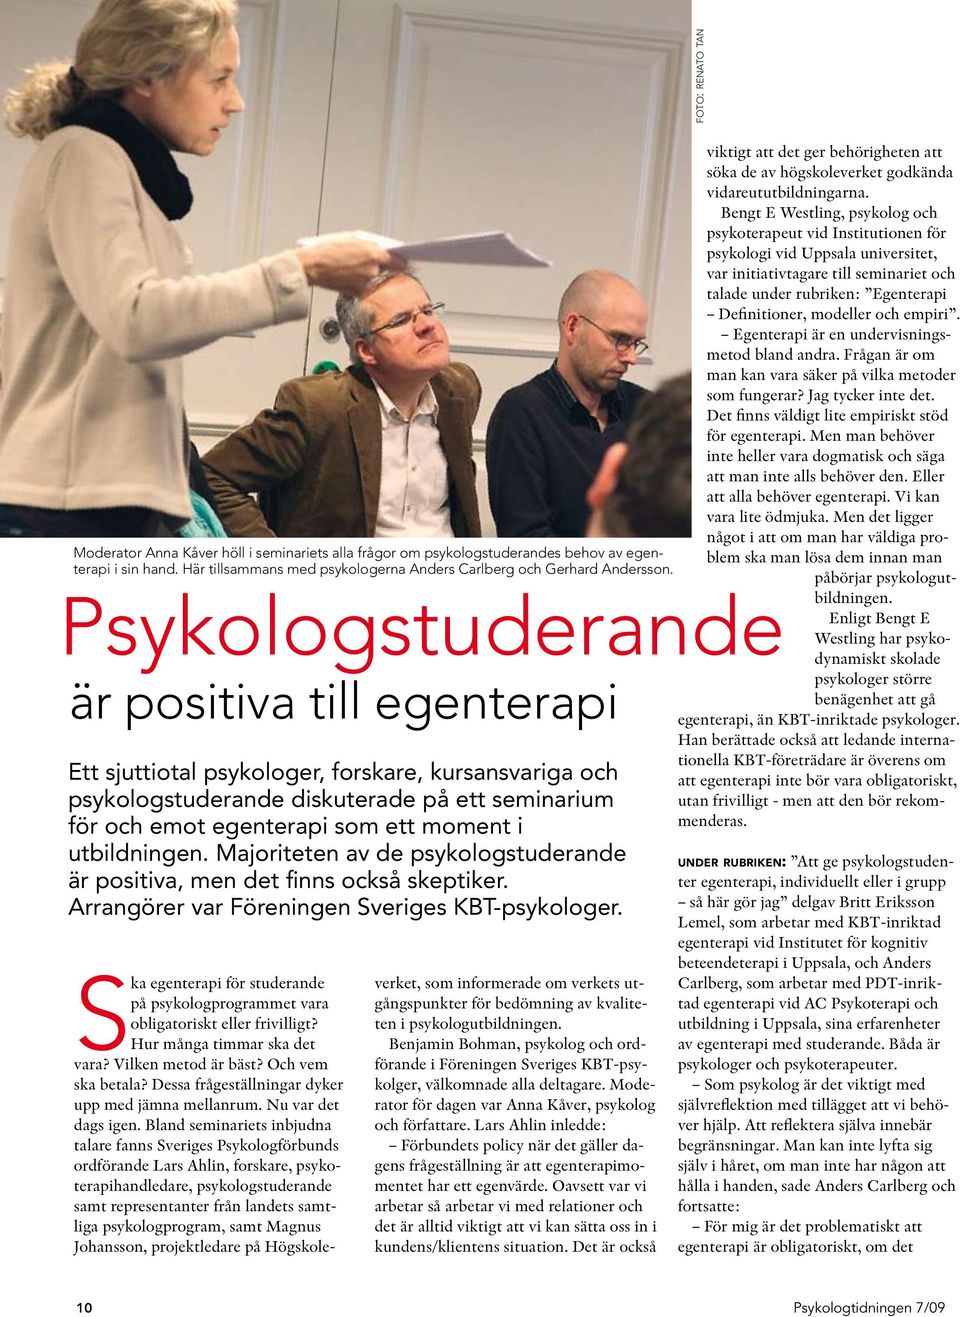 utbildningen. Majoriteten av de psykologstuderande är positiva, men det finns också skeptiker. Arrangörer var Föreningen Sveriges KBT-psykologer.